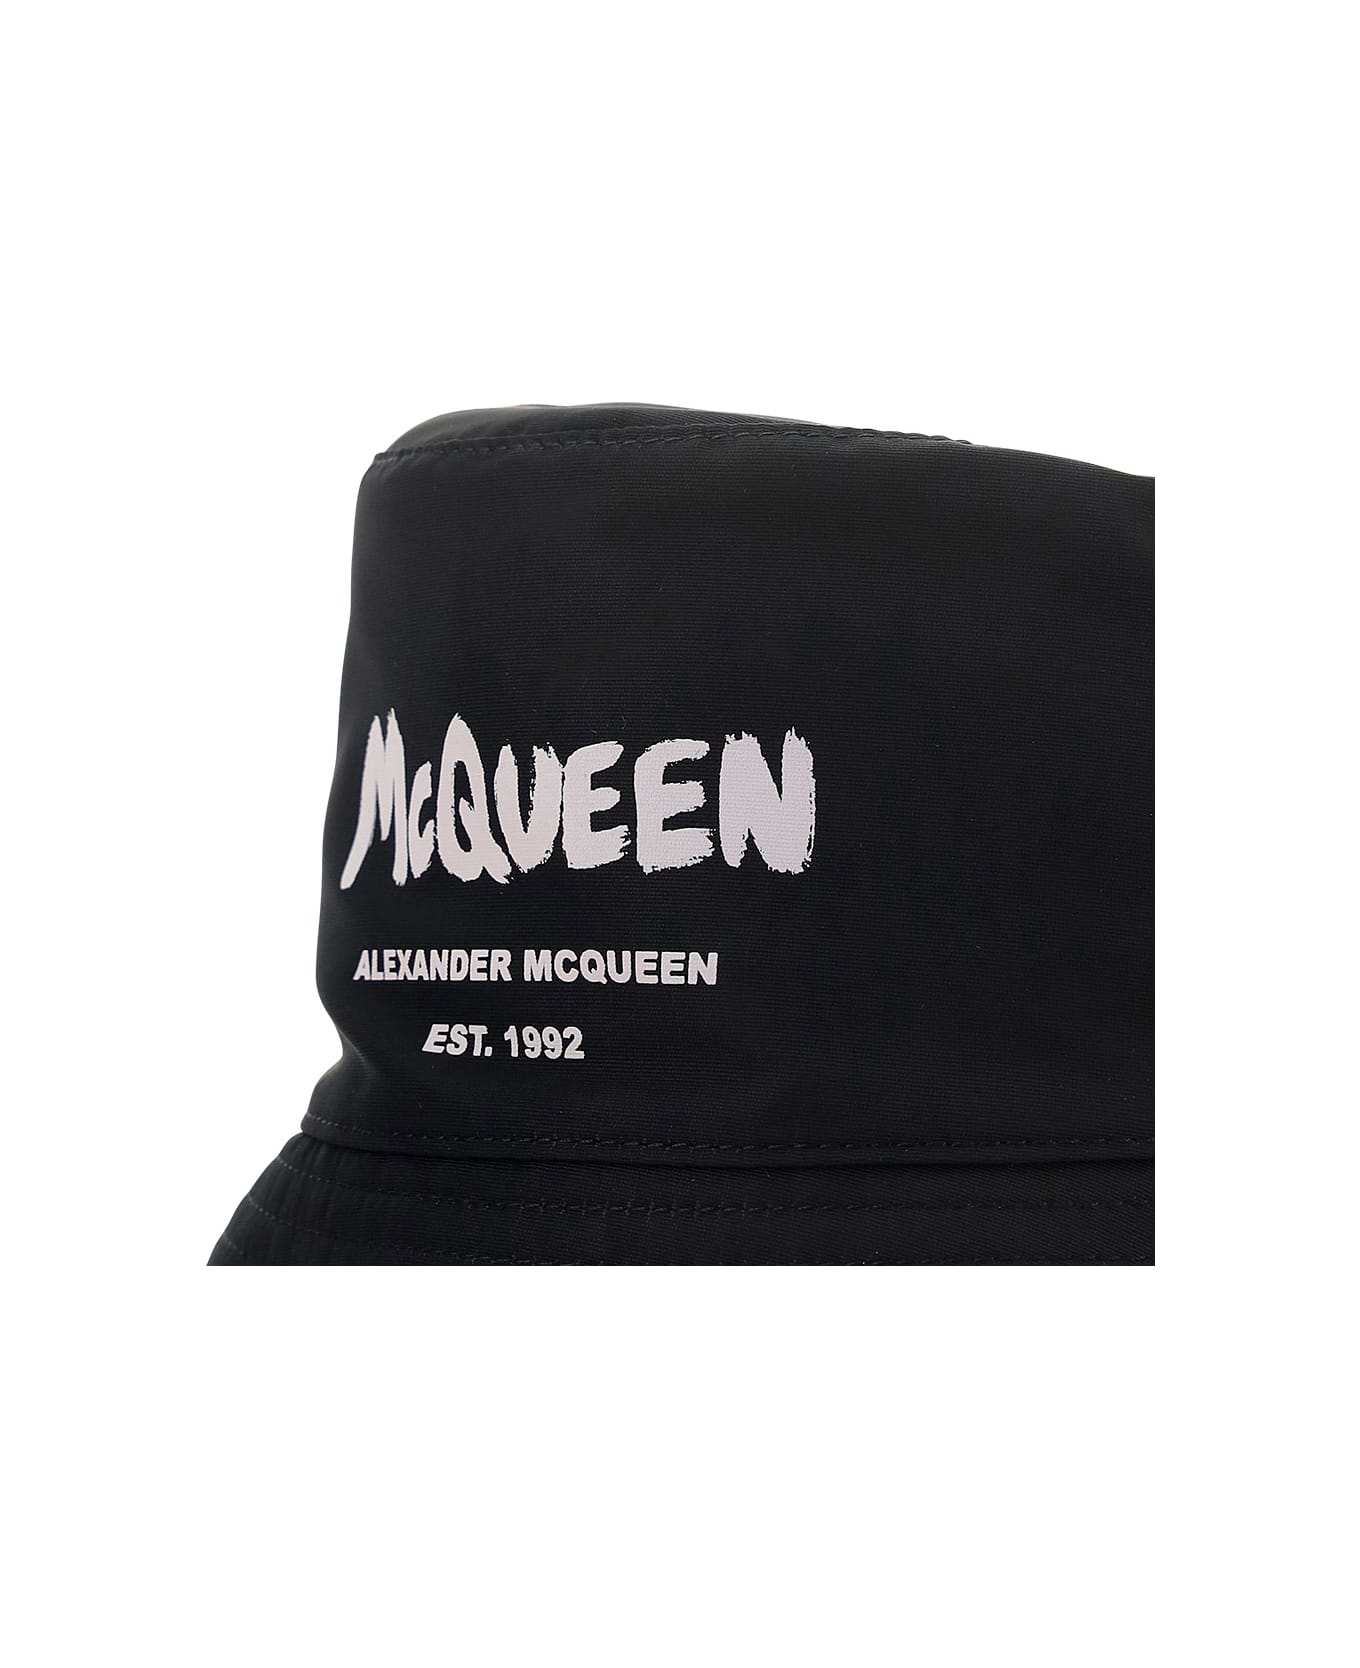 Alexander McQueen Bucket Hat - Black/ivory